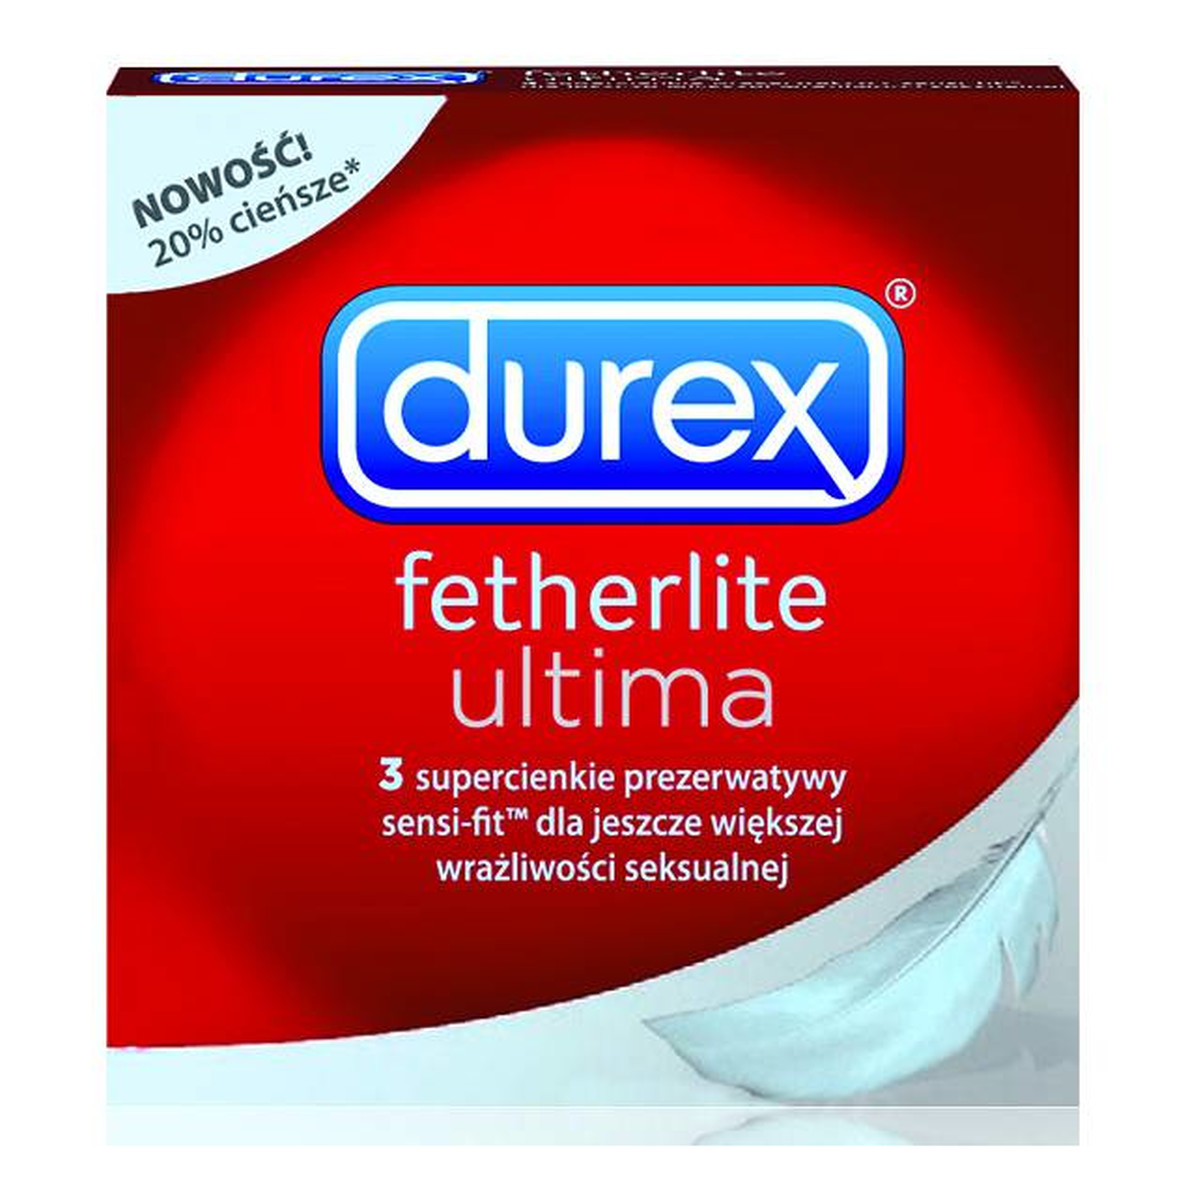 Durex Fetherlite Ultima Prezerwatywy 3szt.